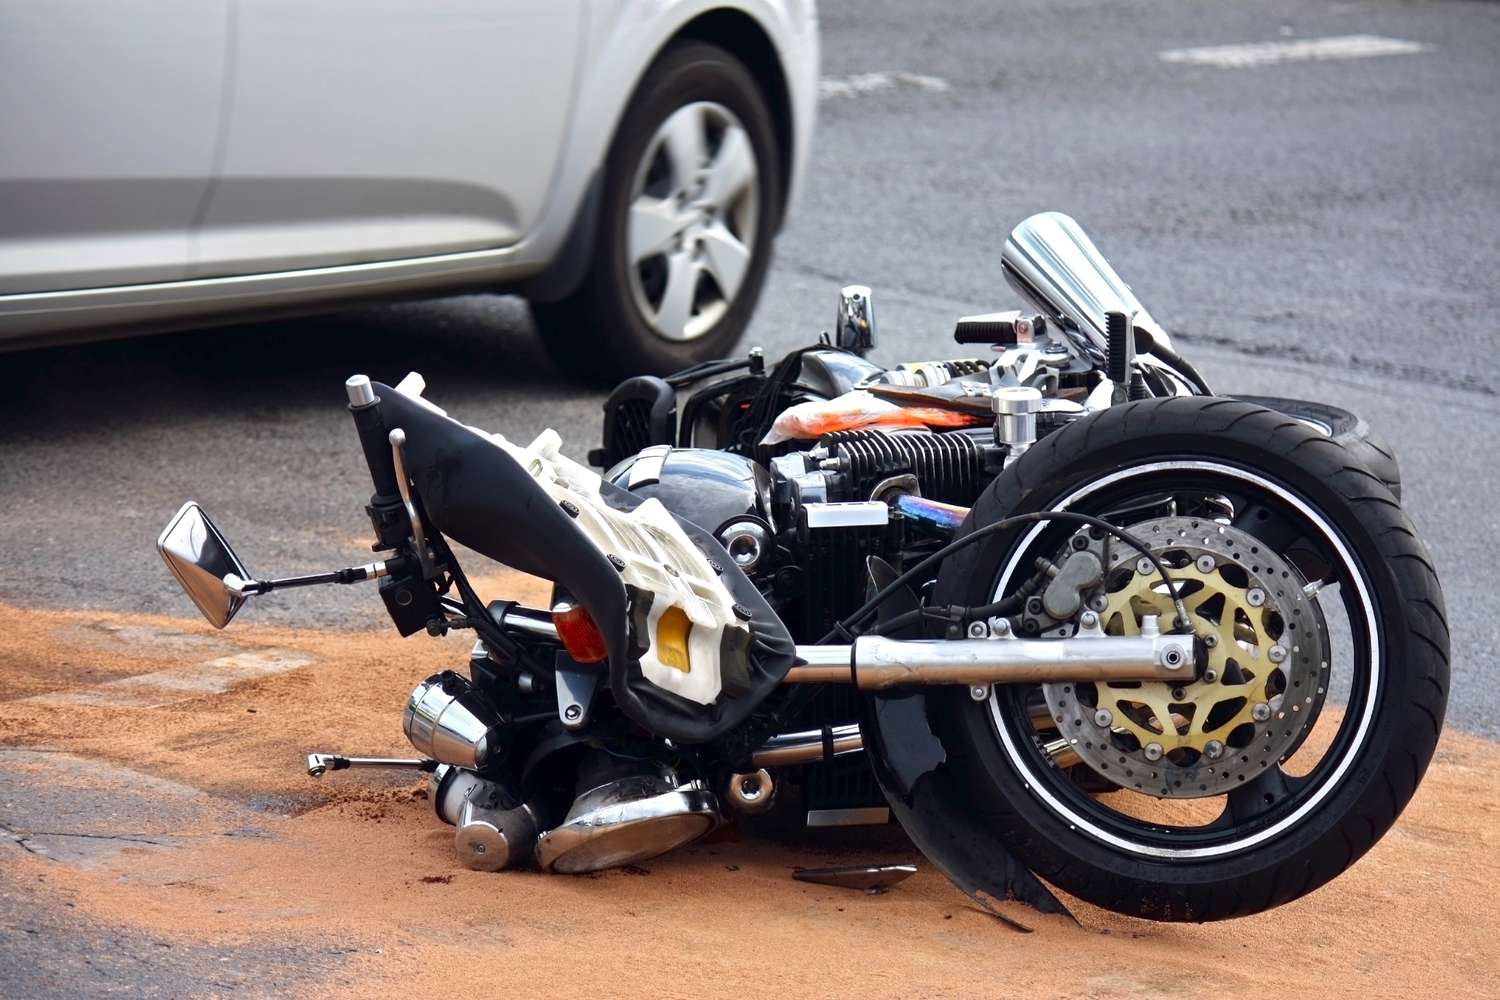 En Argentina, 4 personas mueren por día por accidentes de motos